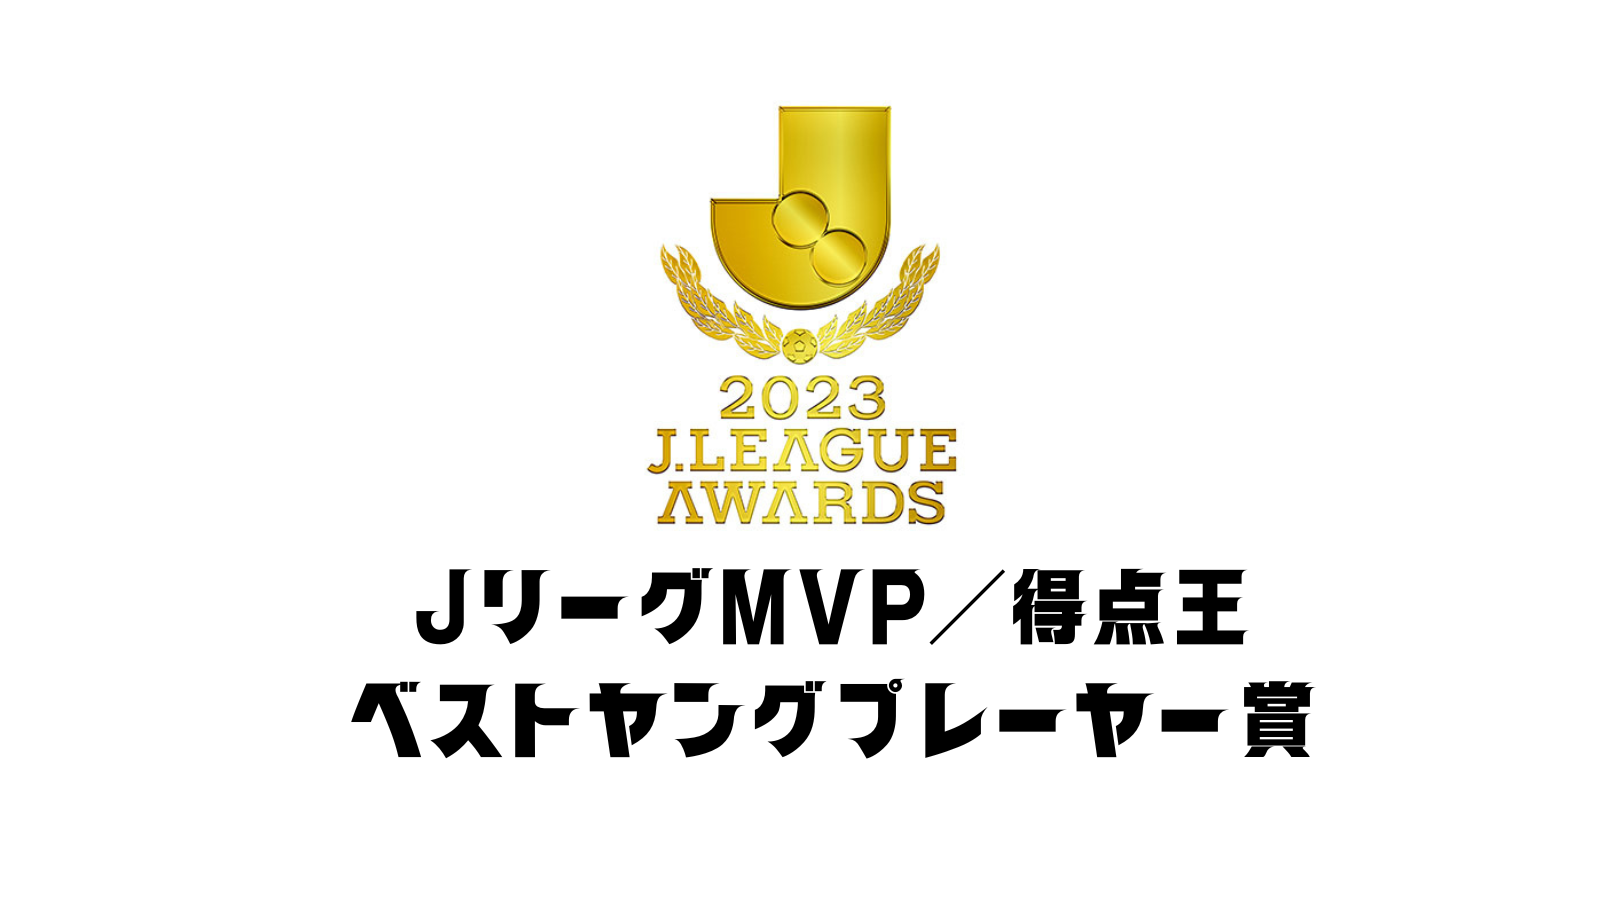 Jリーグ 歴代MVP/得点王/ベストヤングプレーヤー賞/ベストイレブン